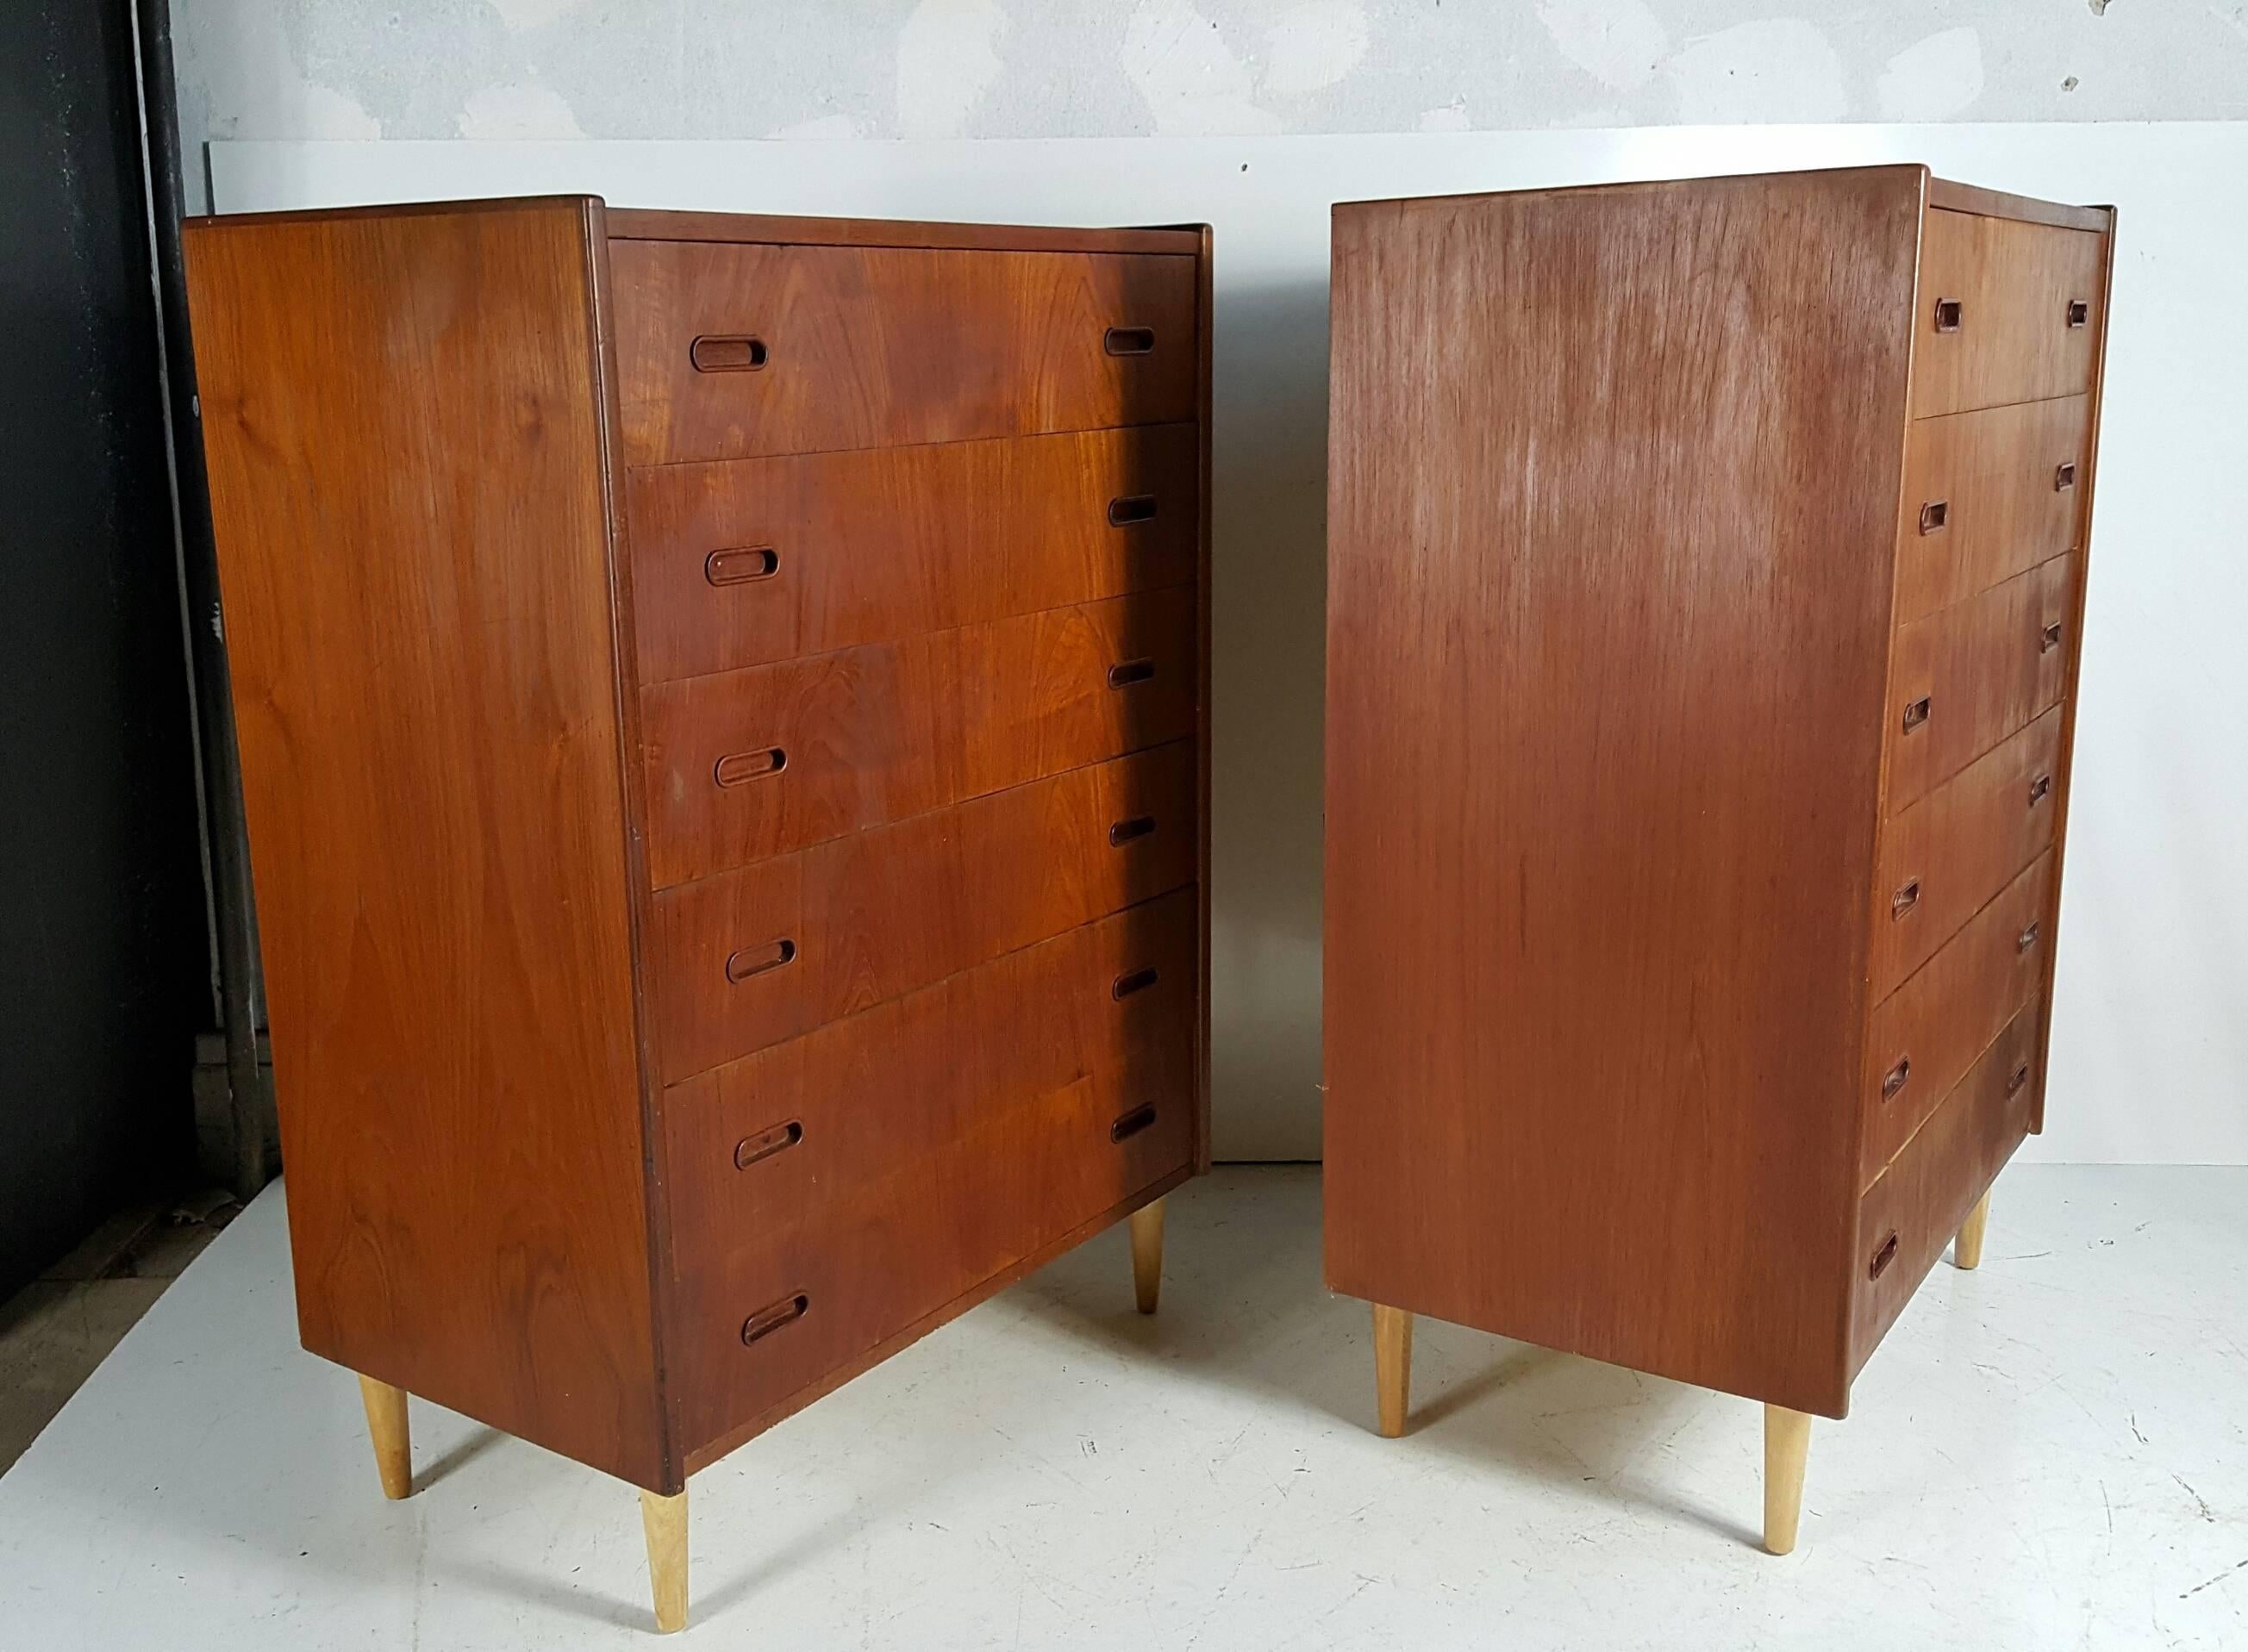  Classic pair Danish Modern Teak six drawer bachelor's chest's..designed by Arne Vodder mfg by Falster,,